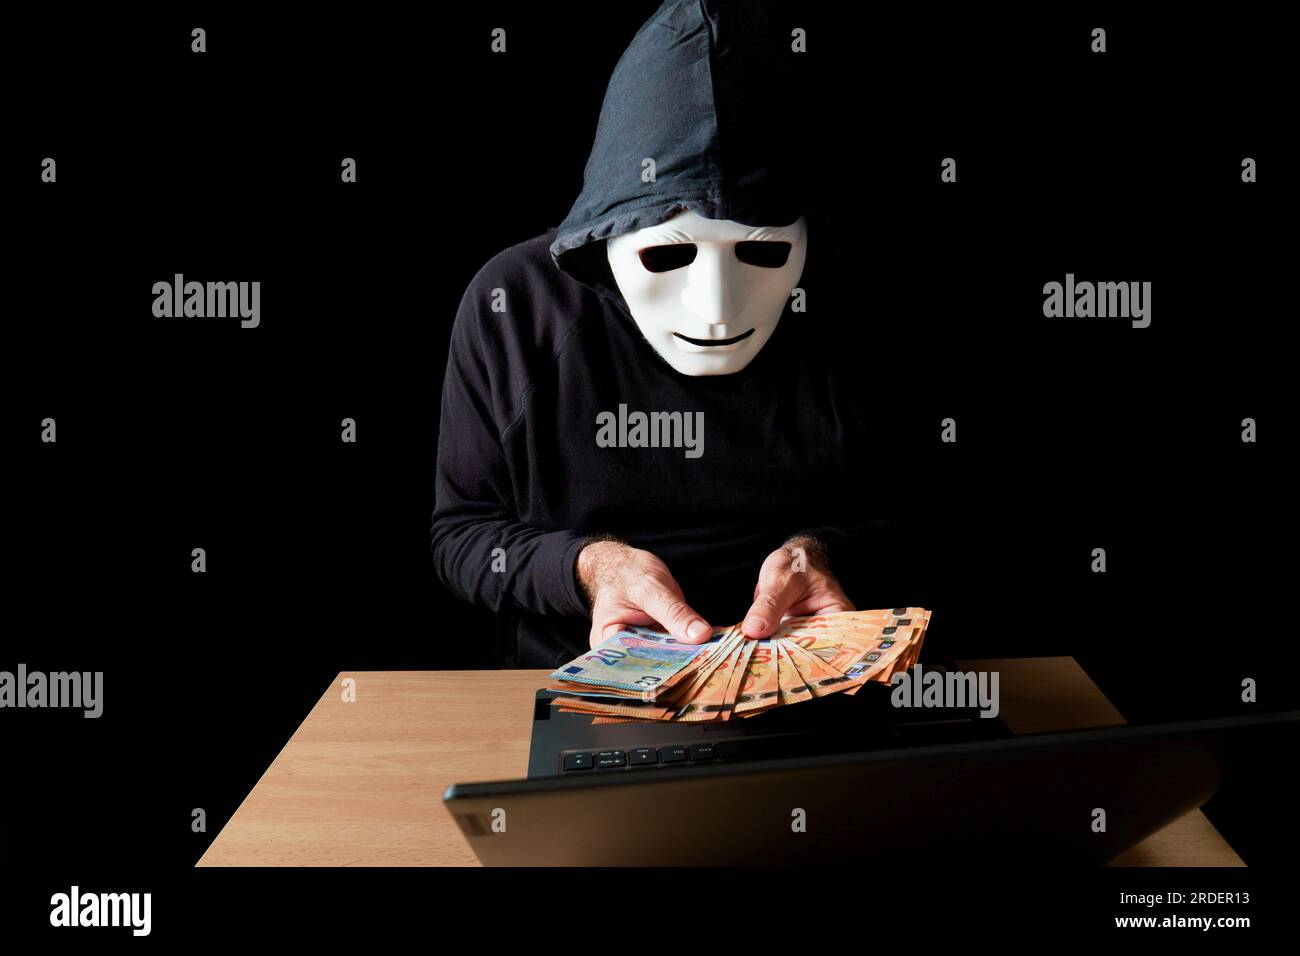 Hombre hacker vestido de negro con máscara blanca y capucha negra contando billetes de euro en sus manos, concepto de cibercrimen, aislado sobre fondo negro Foto de stock